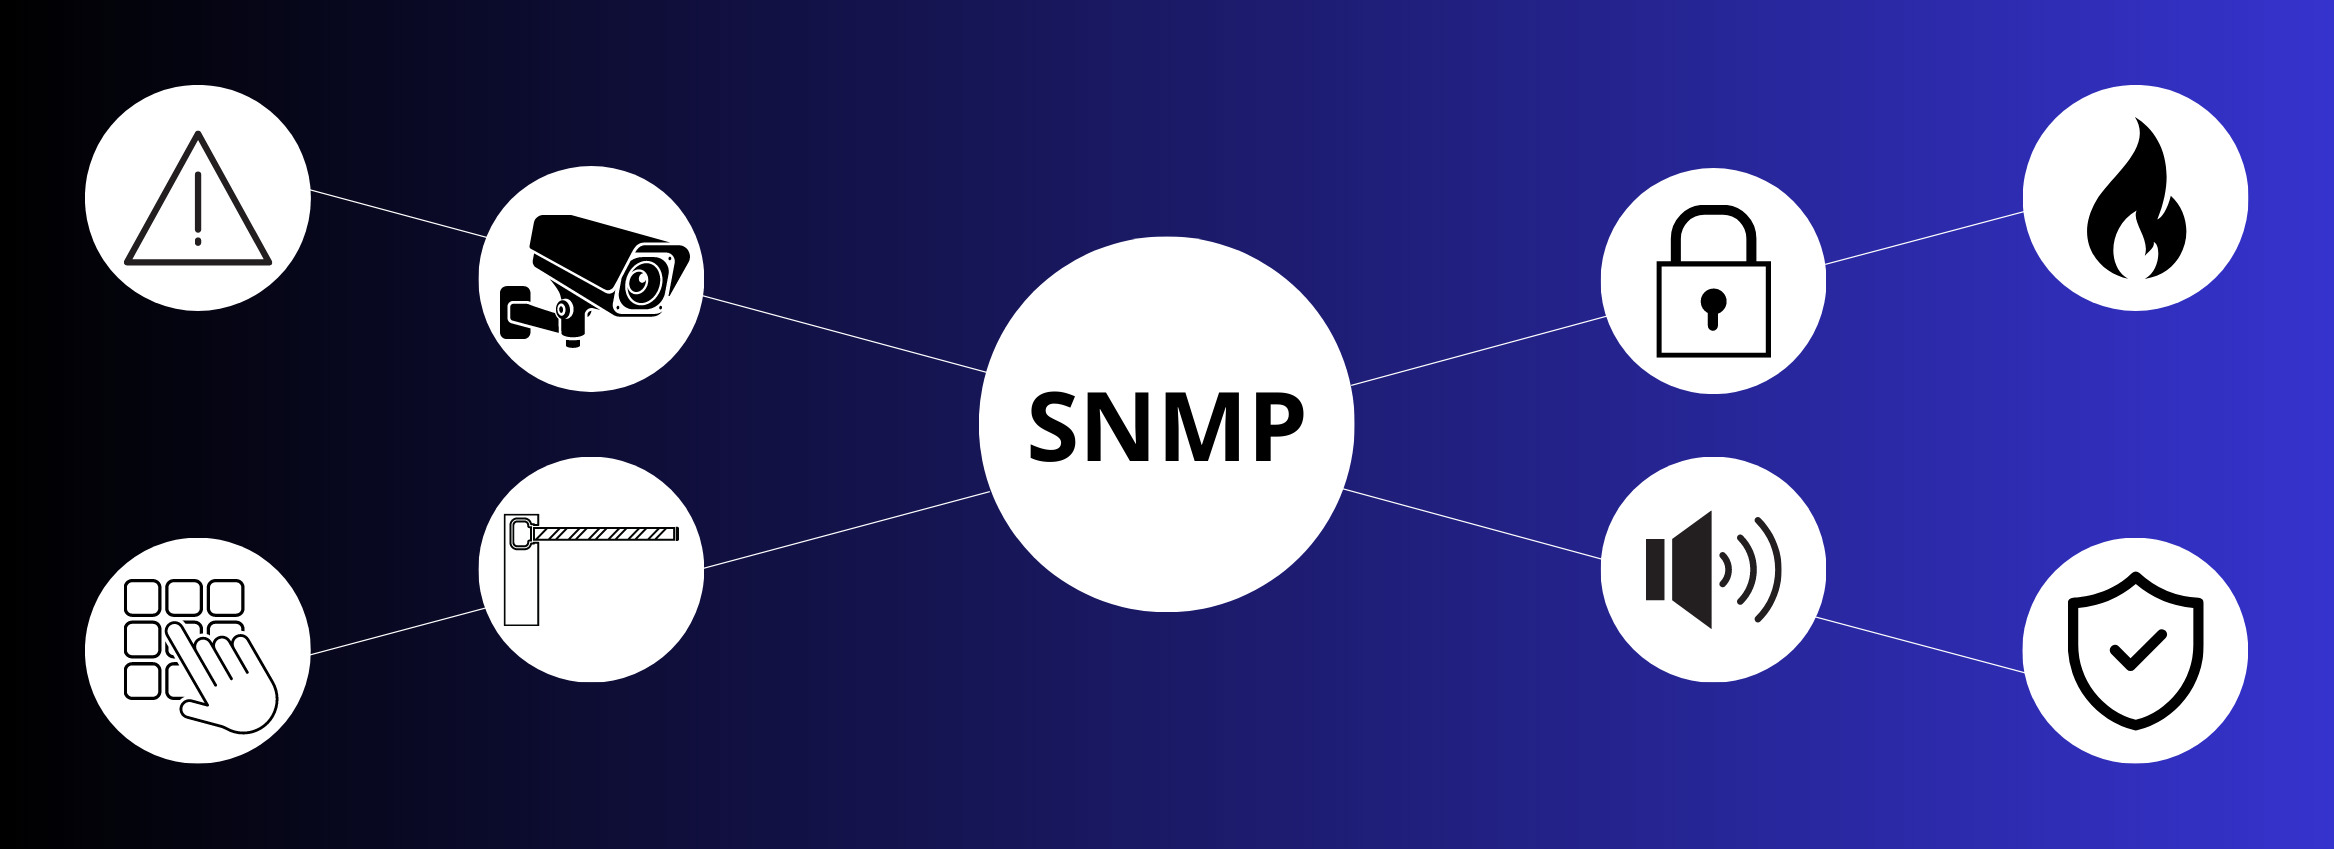 Le protocole SNMP